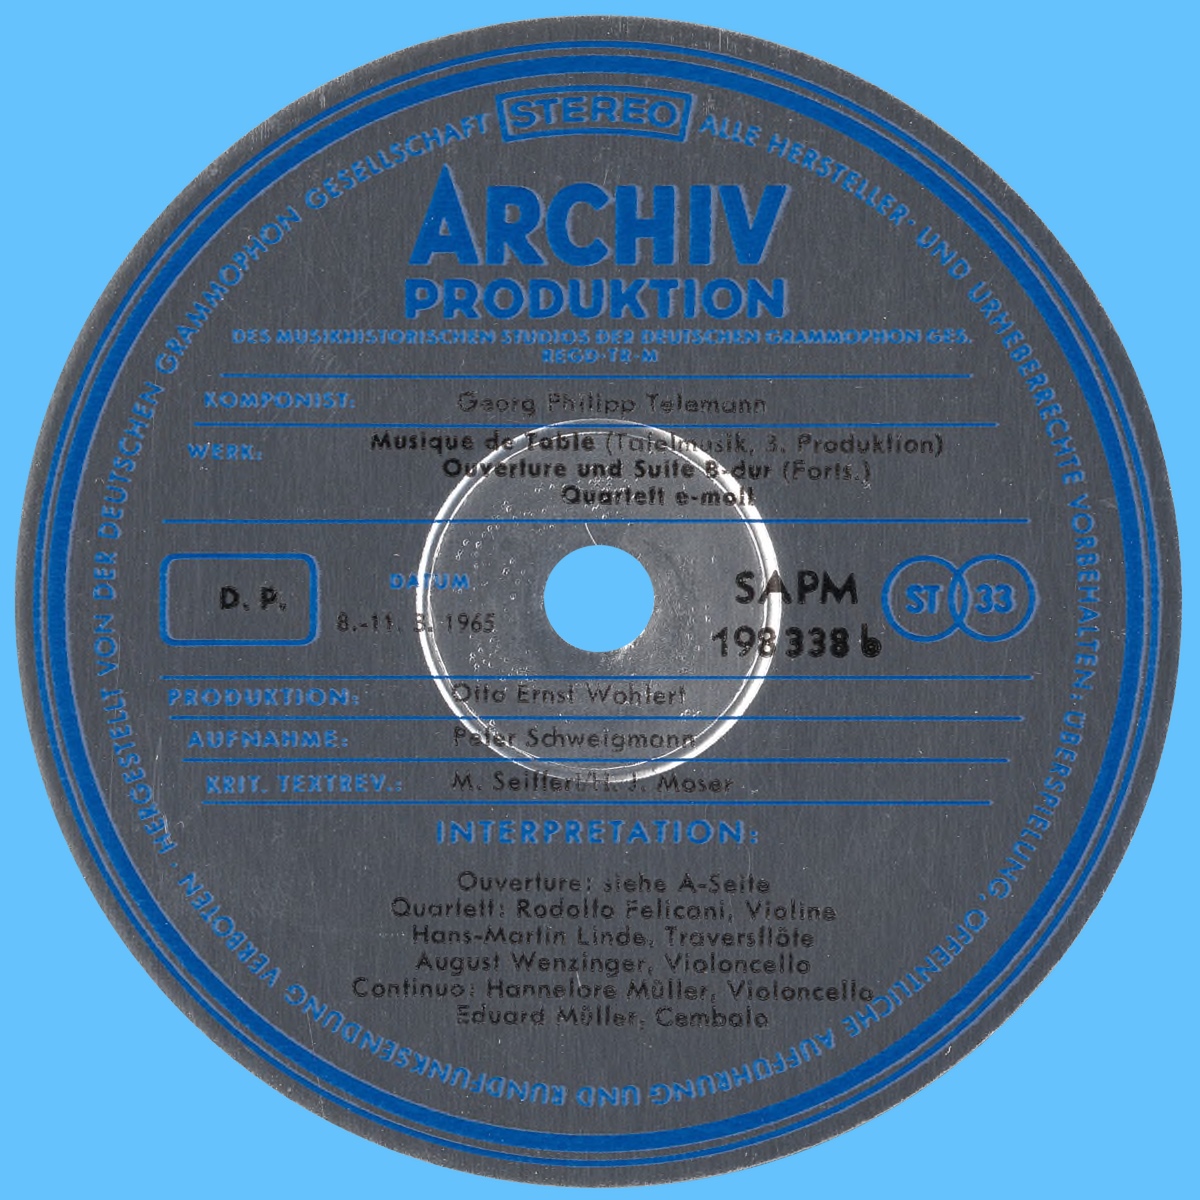 Étiquette verso du premier disque de l'album Archiv Produktion SAPM 198338/39